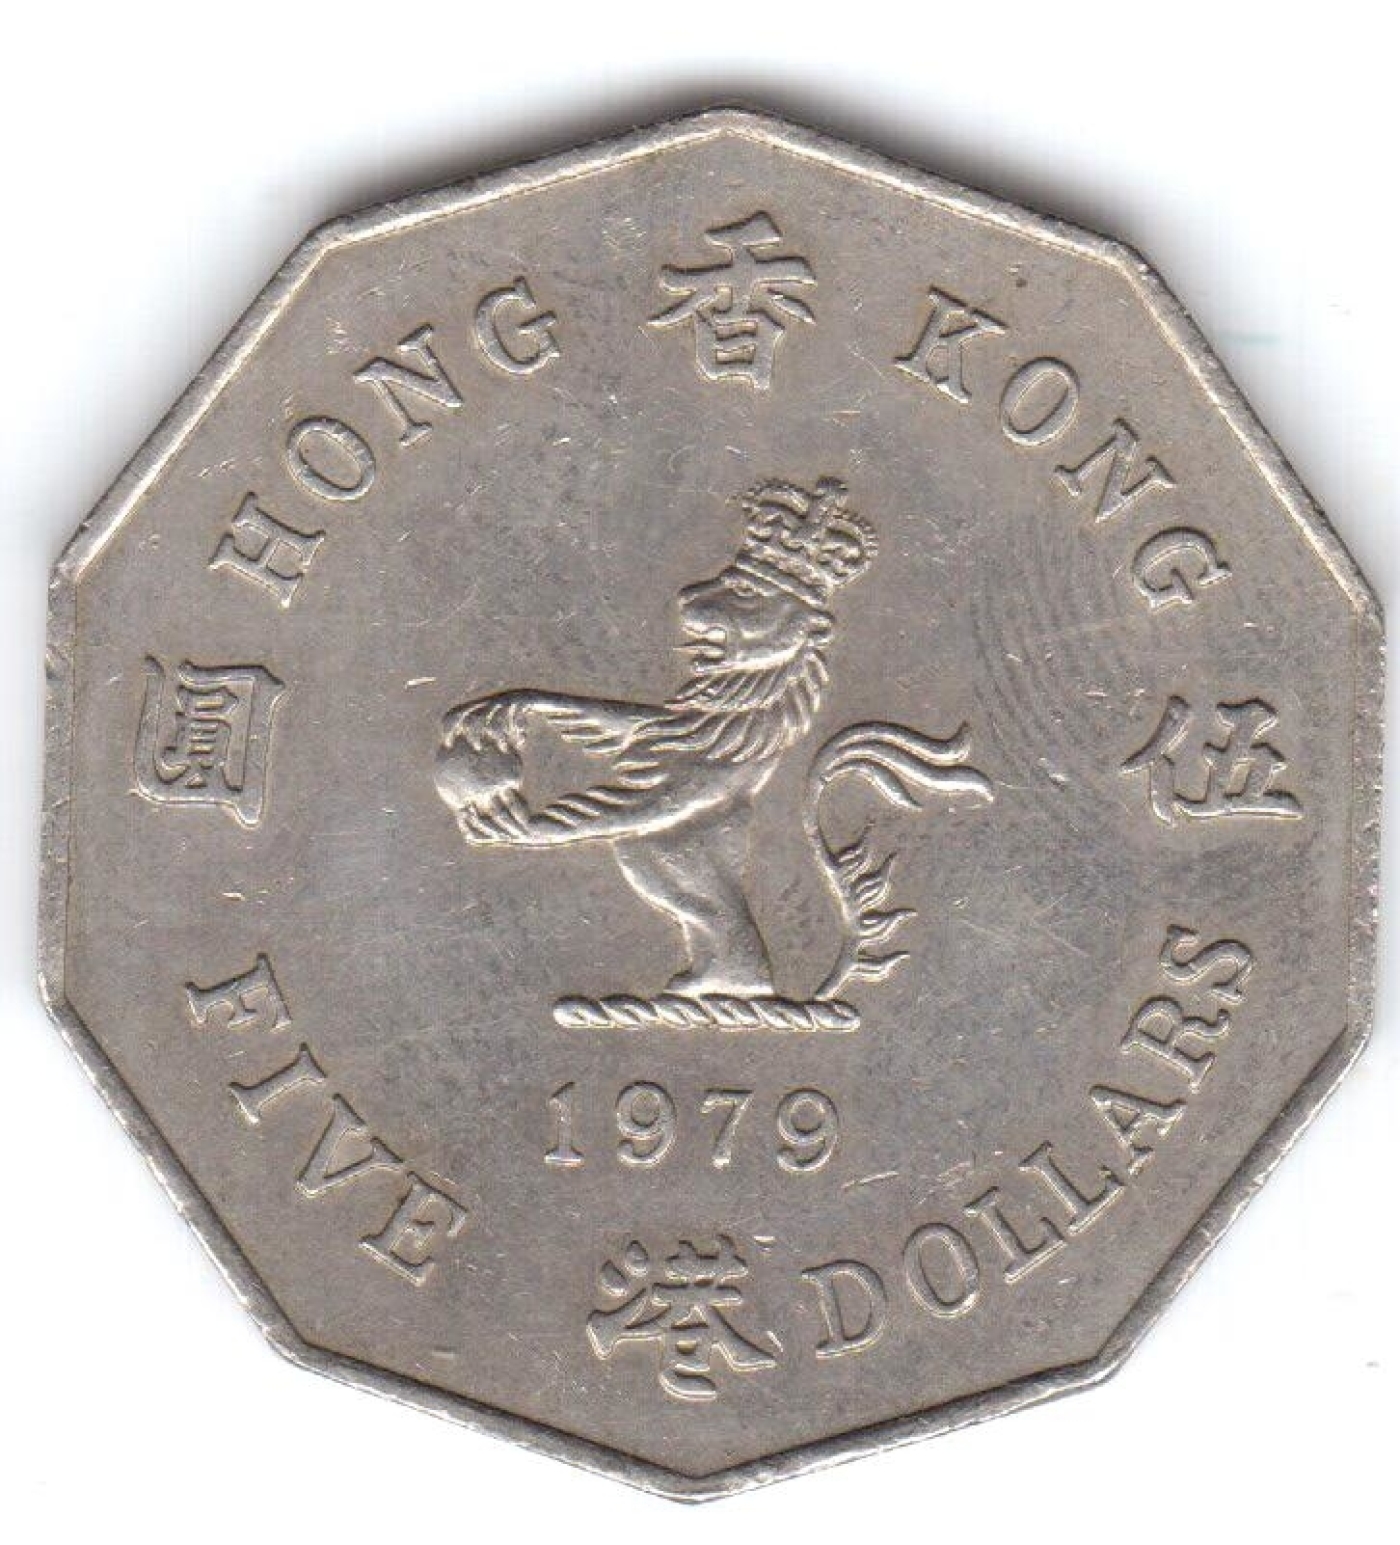 5 Dollars 1979, British Colony (1901-1980) - Hong Kong - Coin - 40689